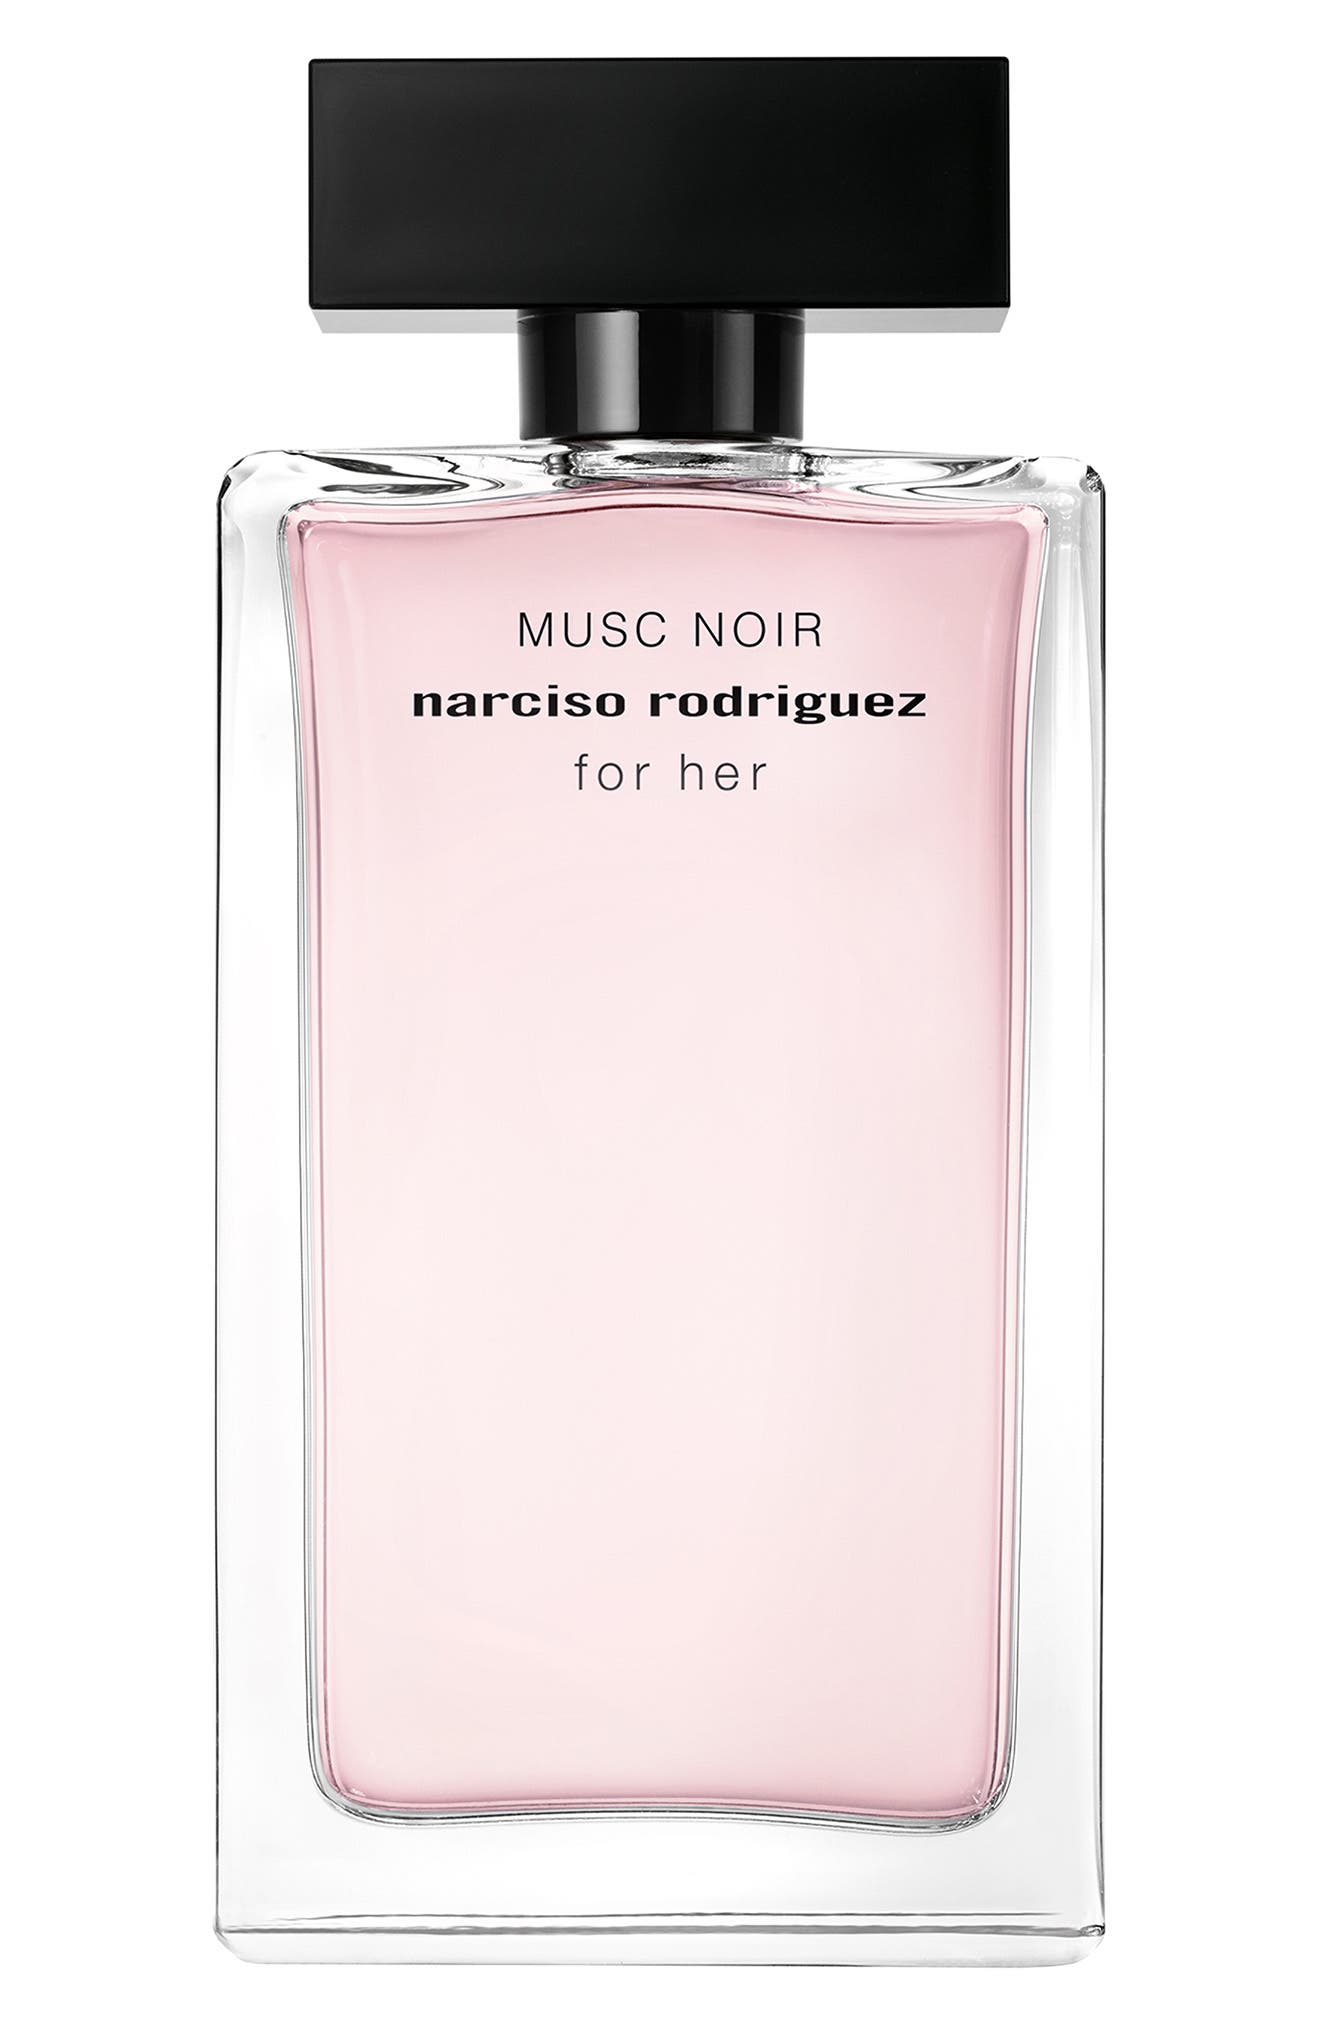 Narciso Rodriguez For Her Musc Noir Eau de Parfum at Nordstrom, Size 3.3 Oz